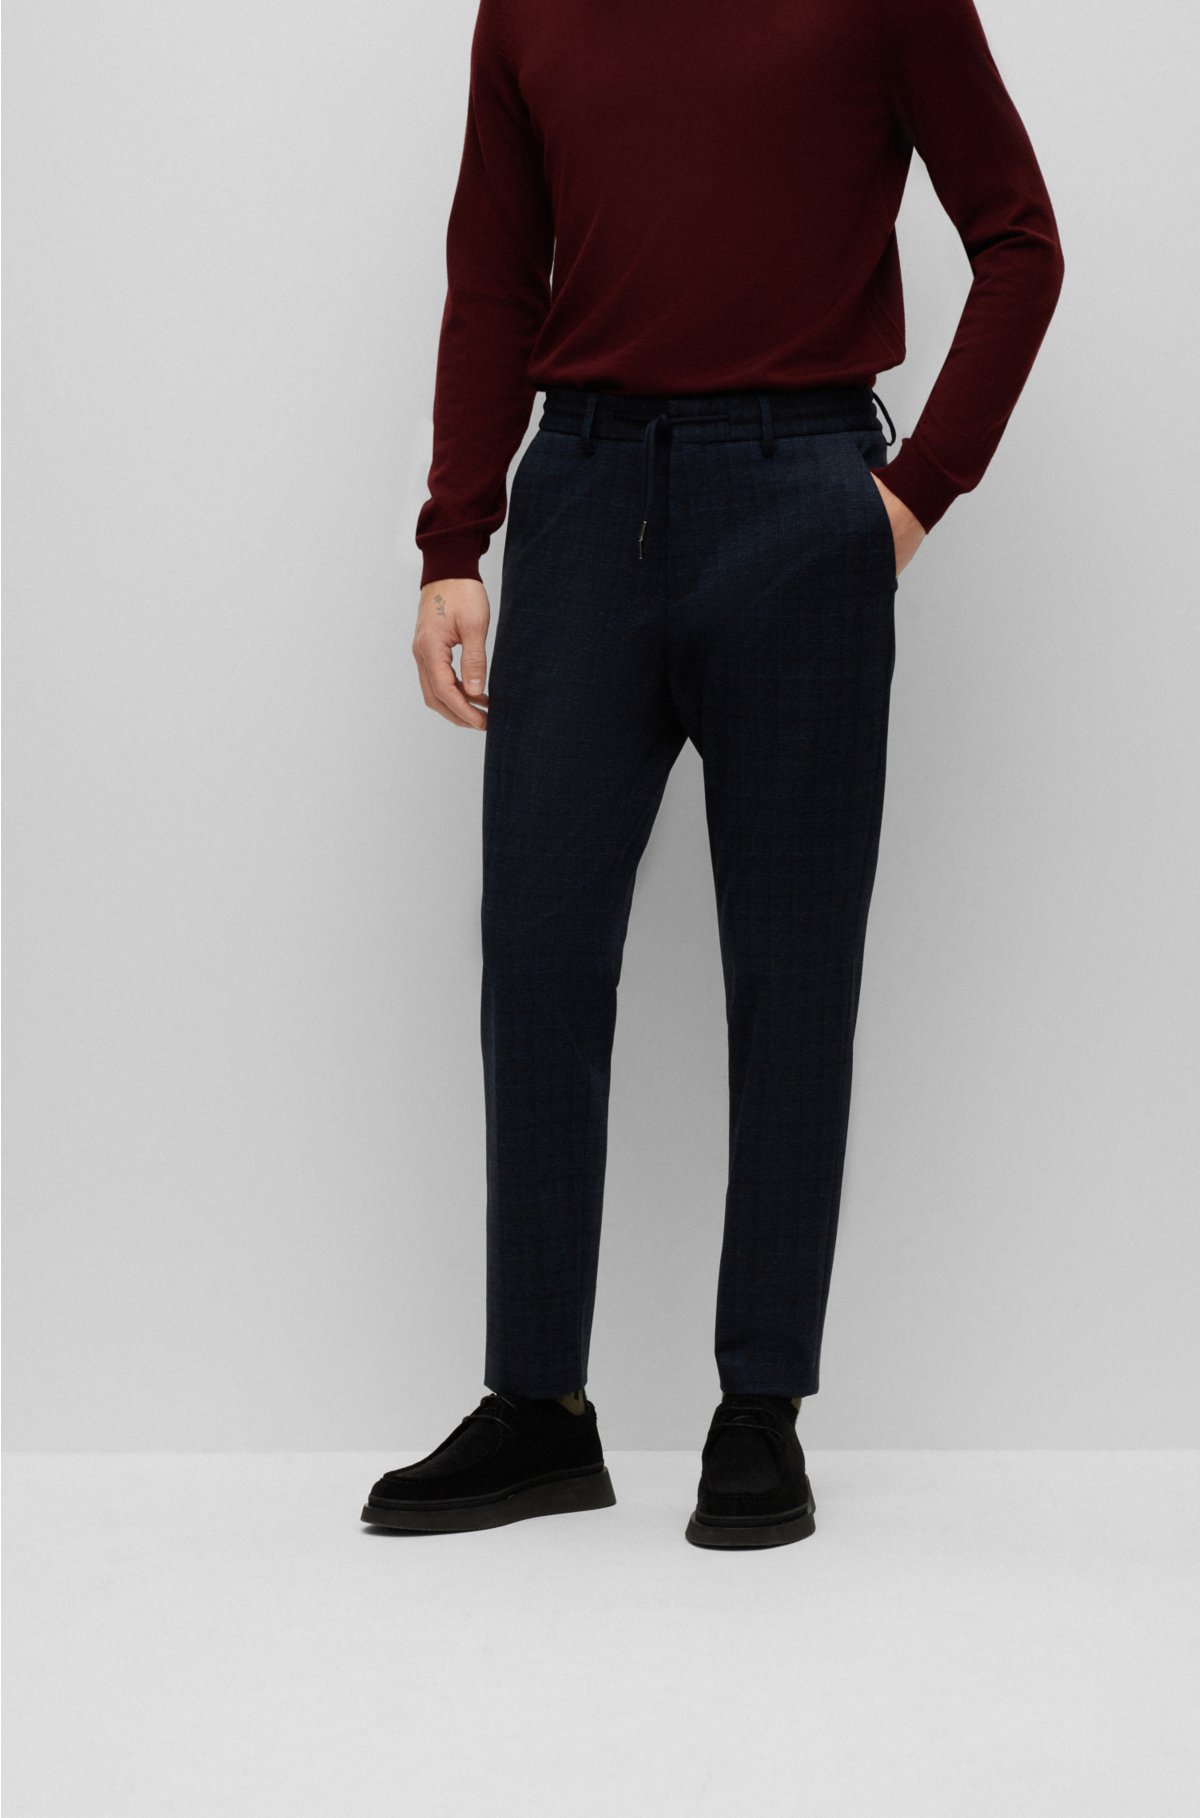 Mens Slim Fit Stretch Trousers Plaid Checks Pattern With Pockets Buttons  Pants Elasticity Suit Pants, Elegant Business Suit Trousers, Regular Fit  Trousers Men's Trousers (Color : Black, Size : S) : 